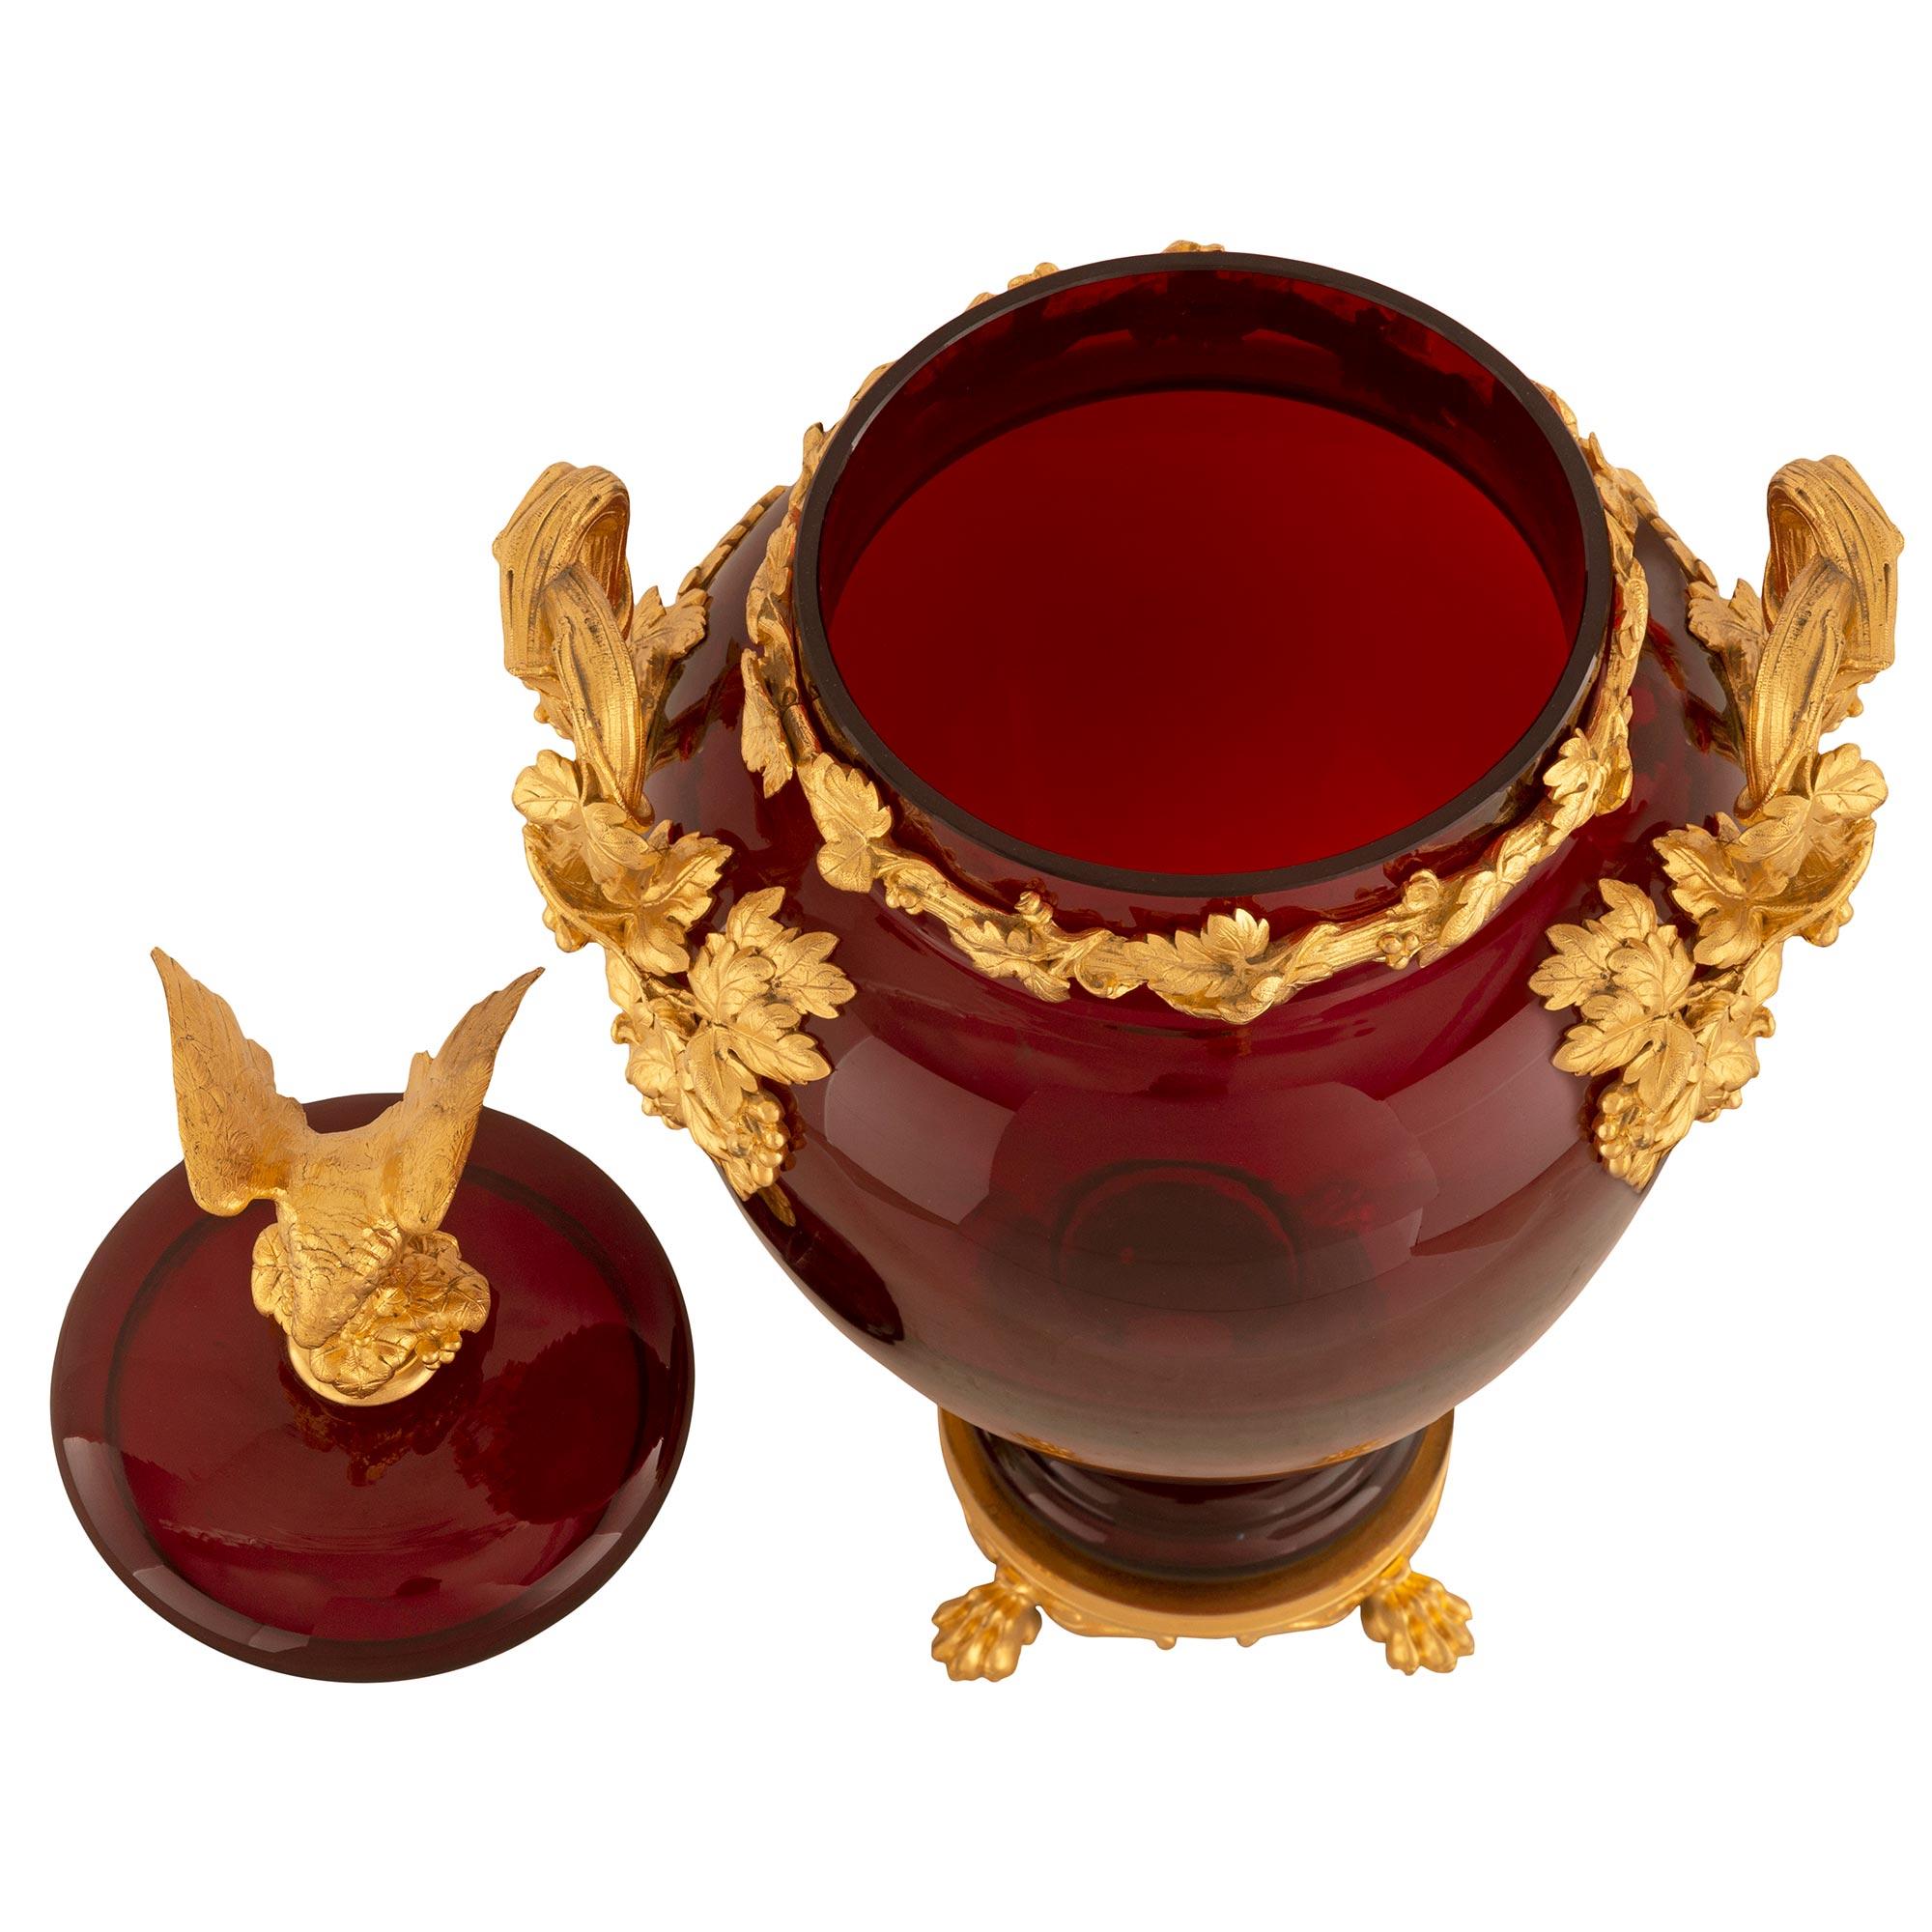 Eine atemberaubende französische Urne im neoklassischen Stil des 19. Jahrhunderts aus ochsenblutrotem Glas und Ormolu. Die Urne steht auf einem runden Sockel mit hübschen ormolierten Tatzenfüßen inmitten von verschnörkelten, kannelierten und